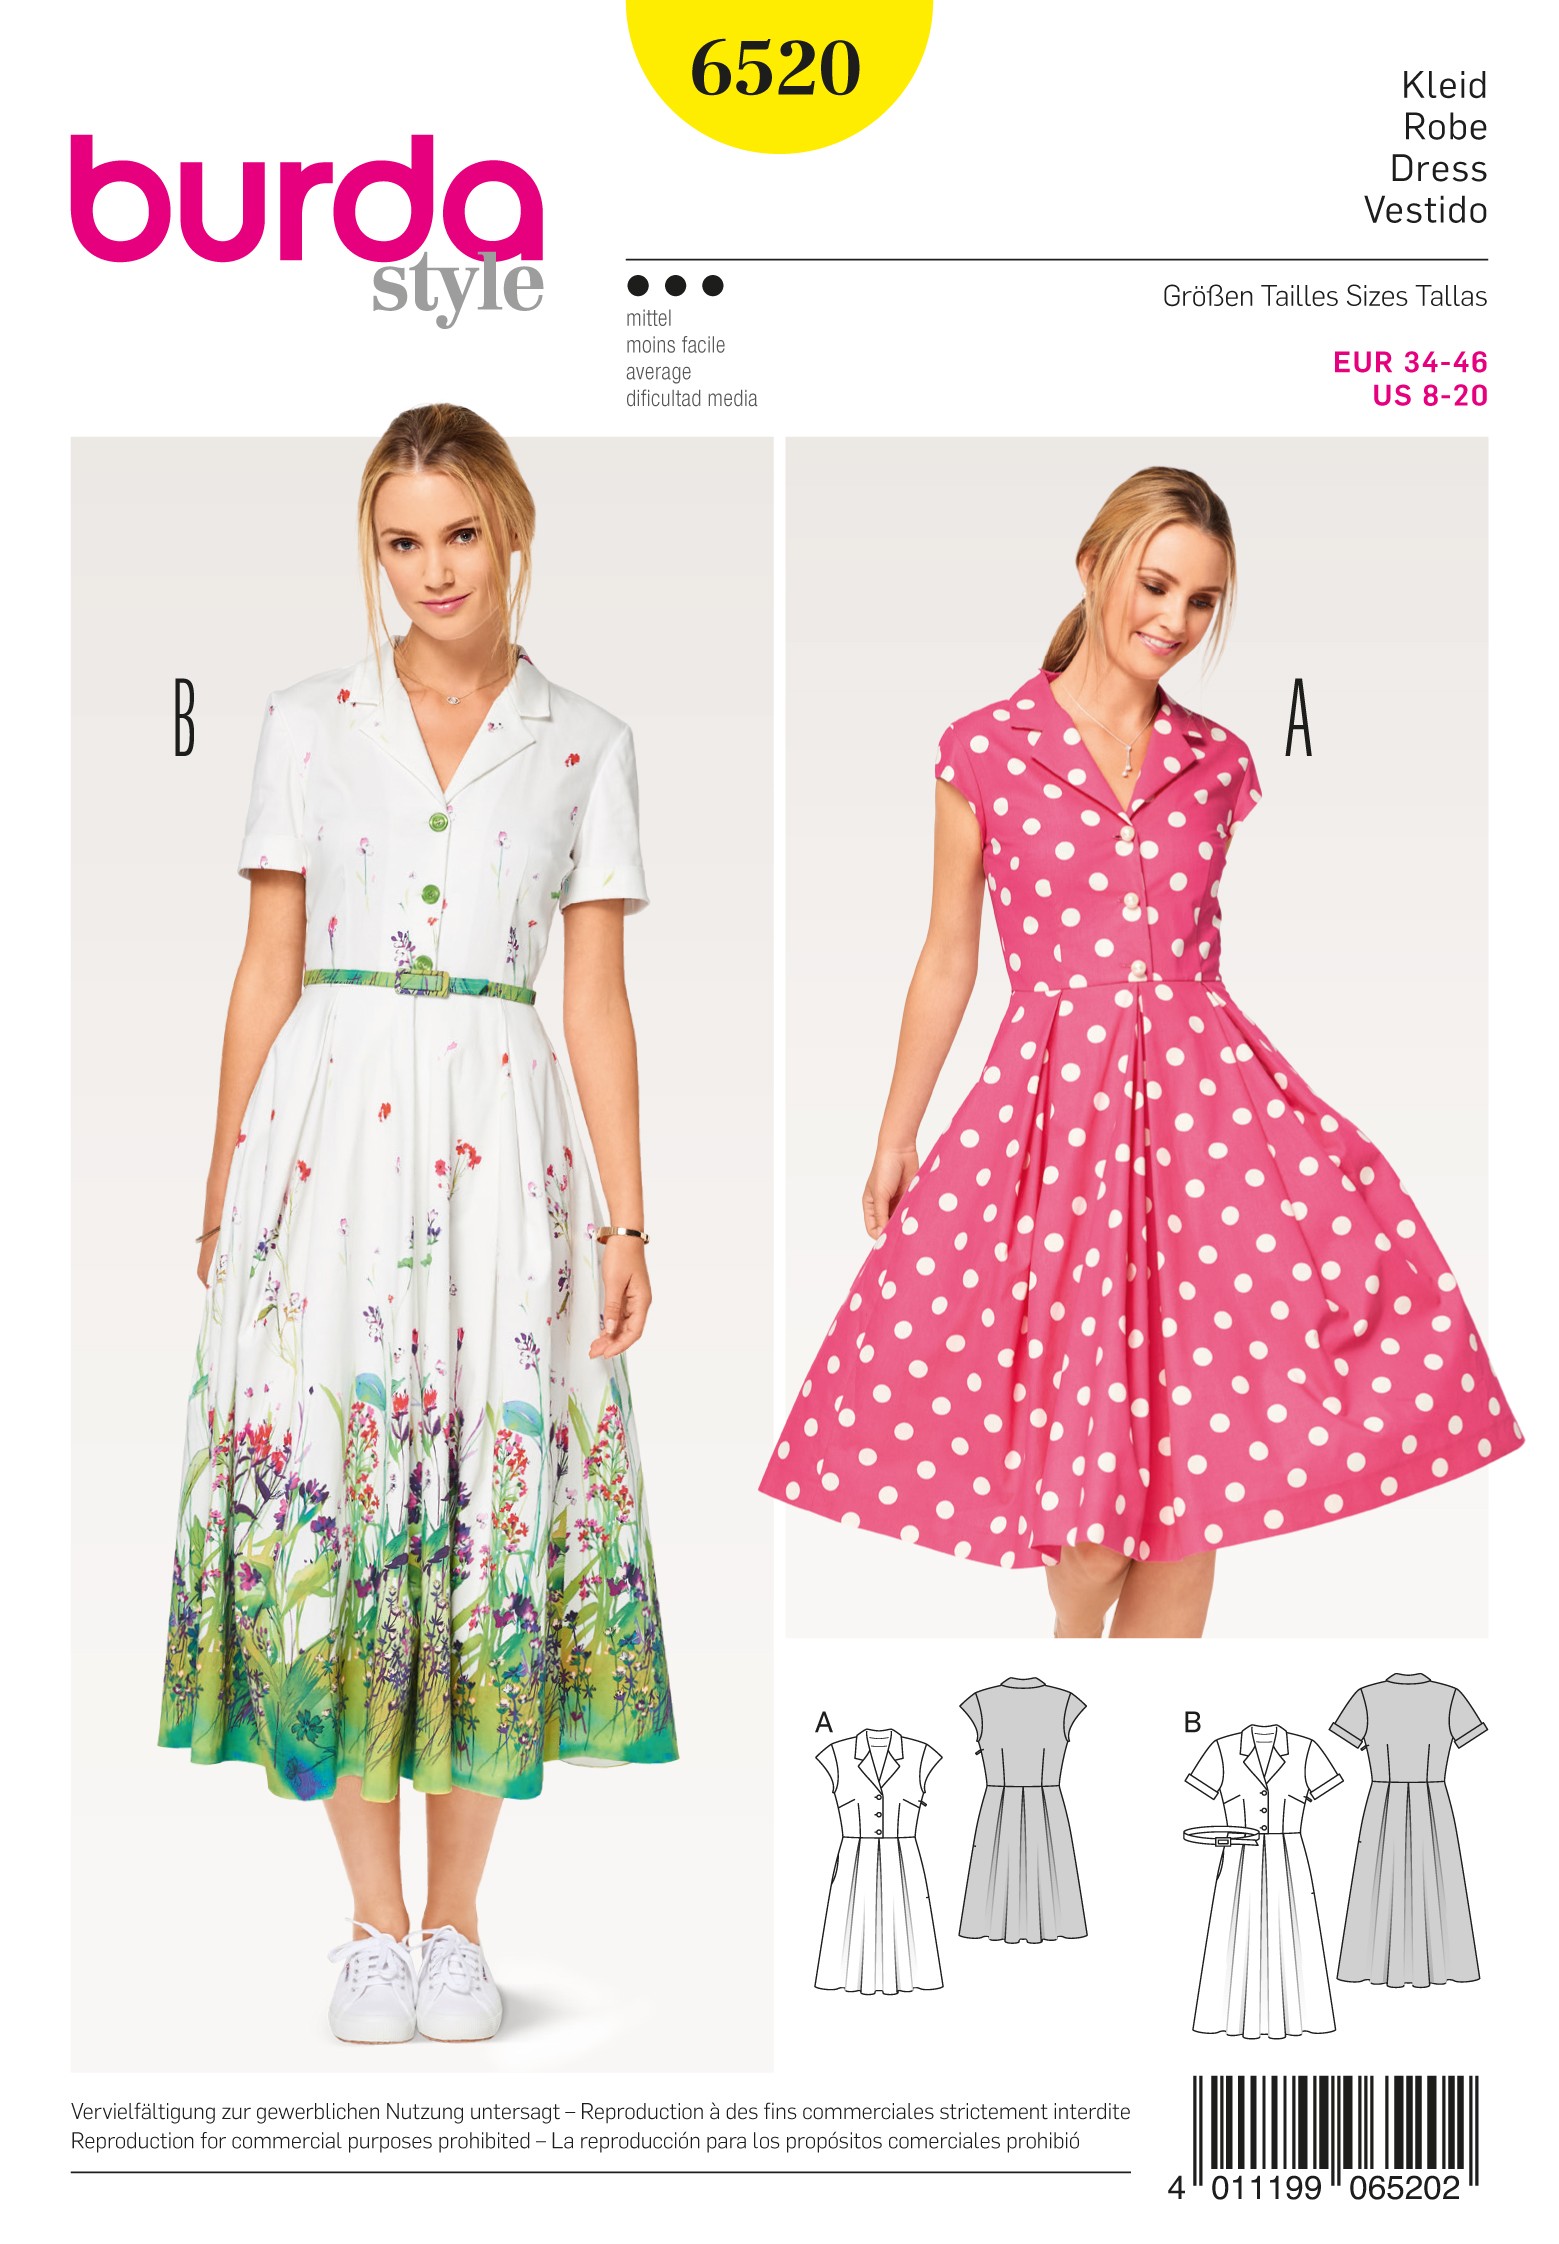 Burda Sewing Pattern 6520 Style Women's Dress, Blouse and Skirt Size 8-20